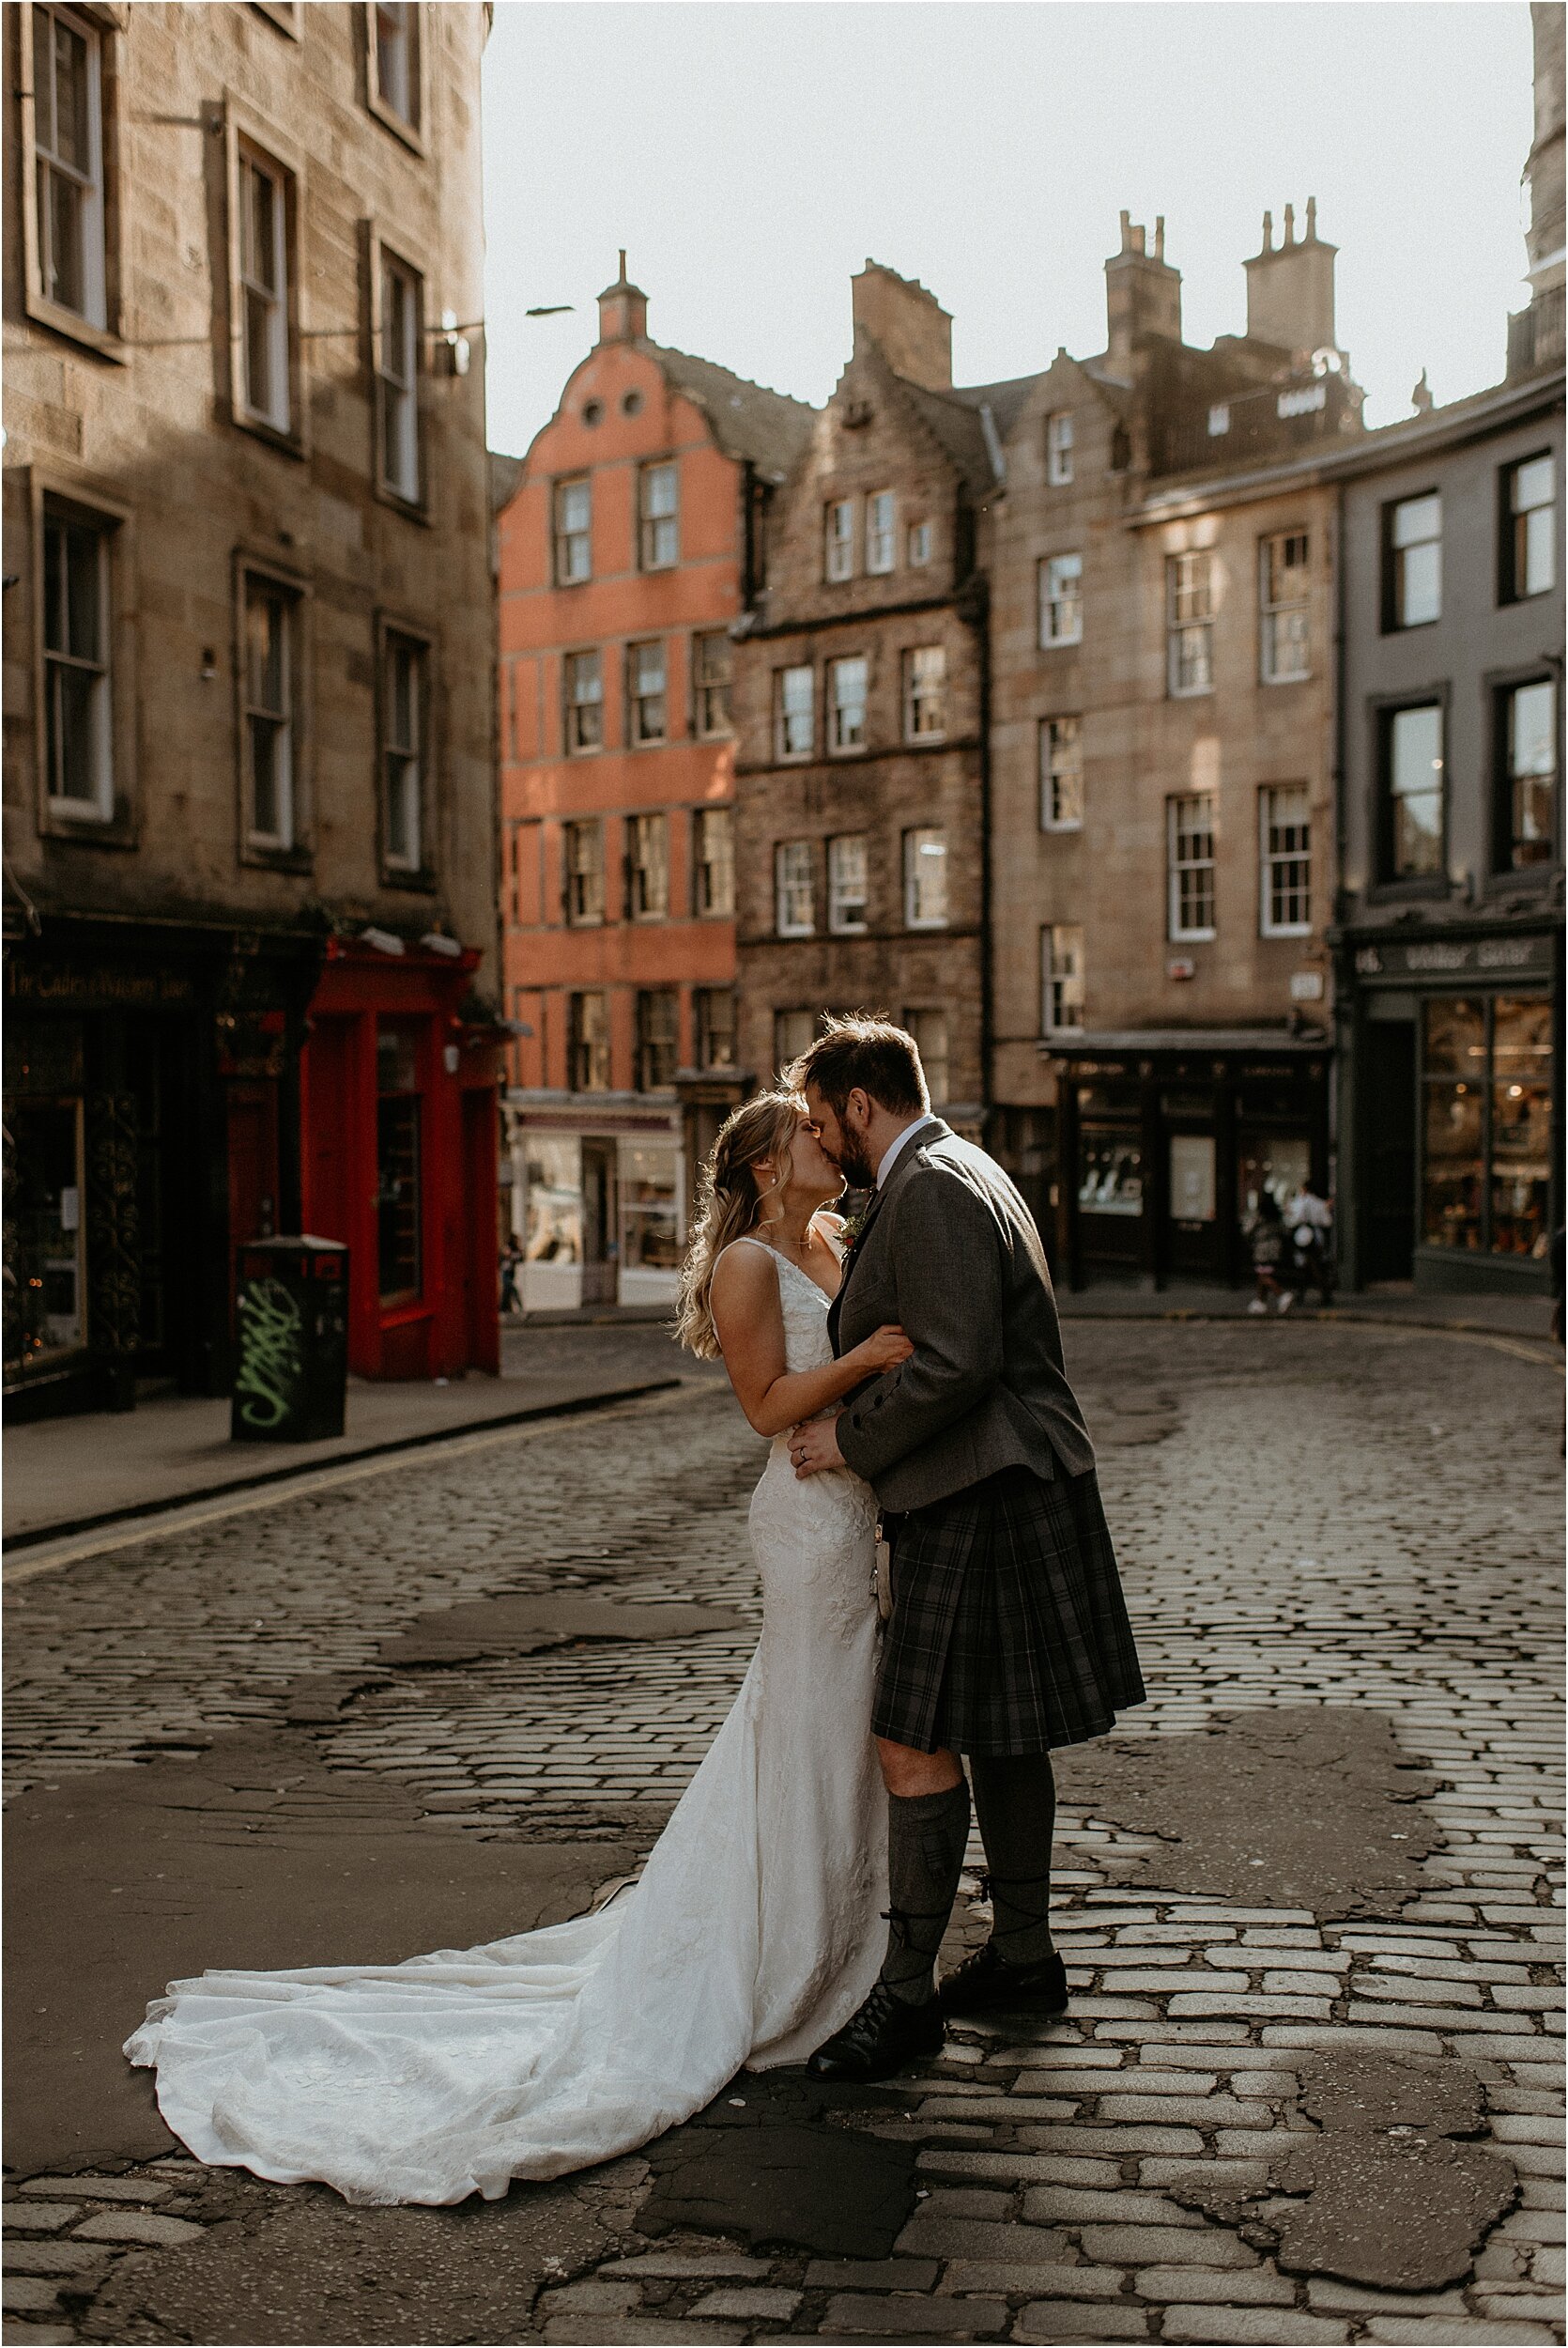 Timberyard-wedding-Edinburgh-70.jpg